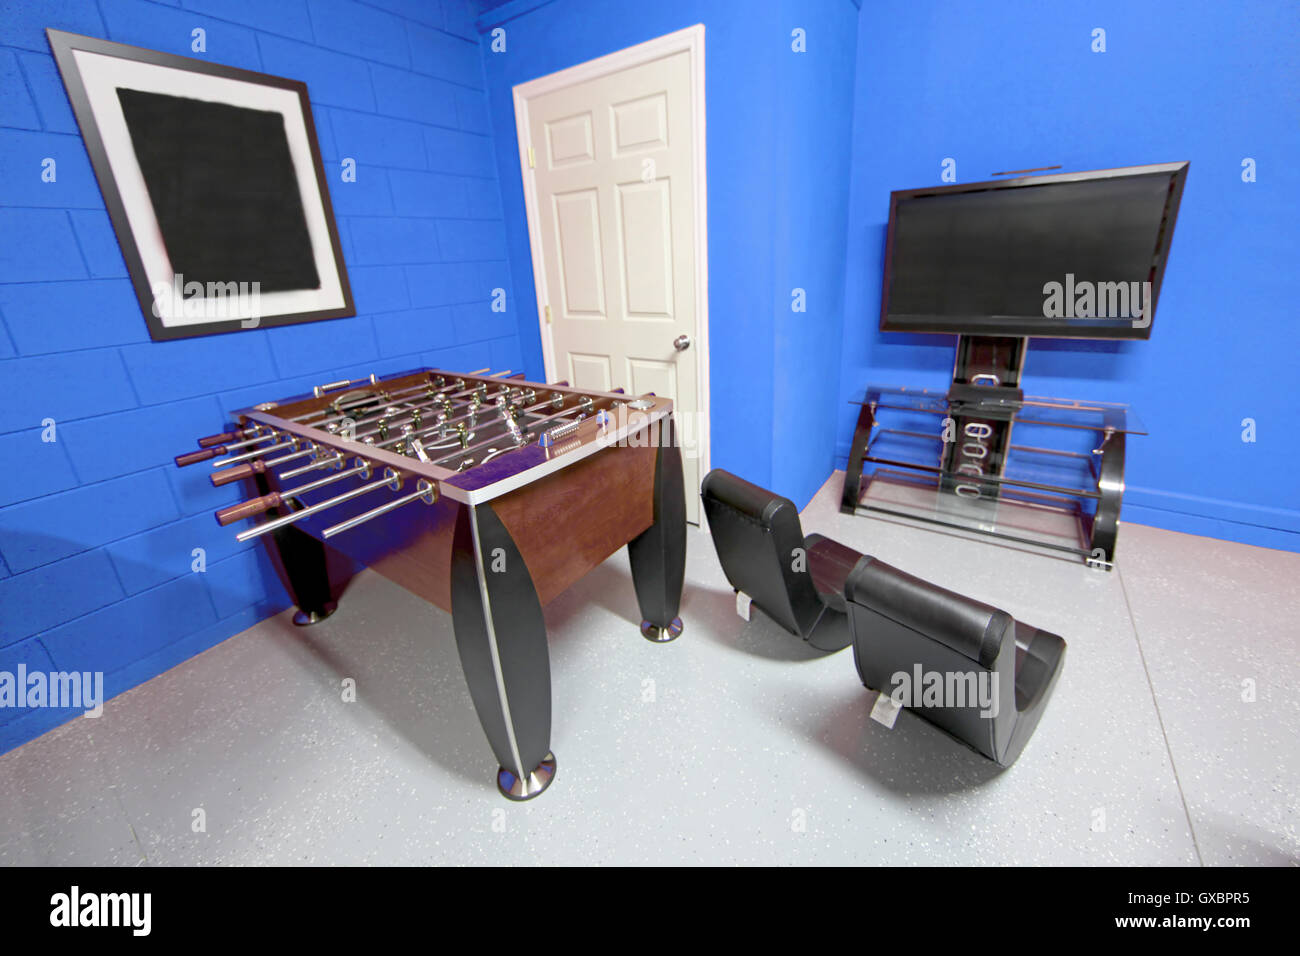 Une salle de jeux avec baby-foot, télévision et des jeux de chaises Banque D'Images